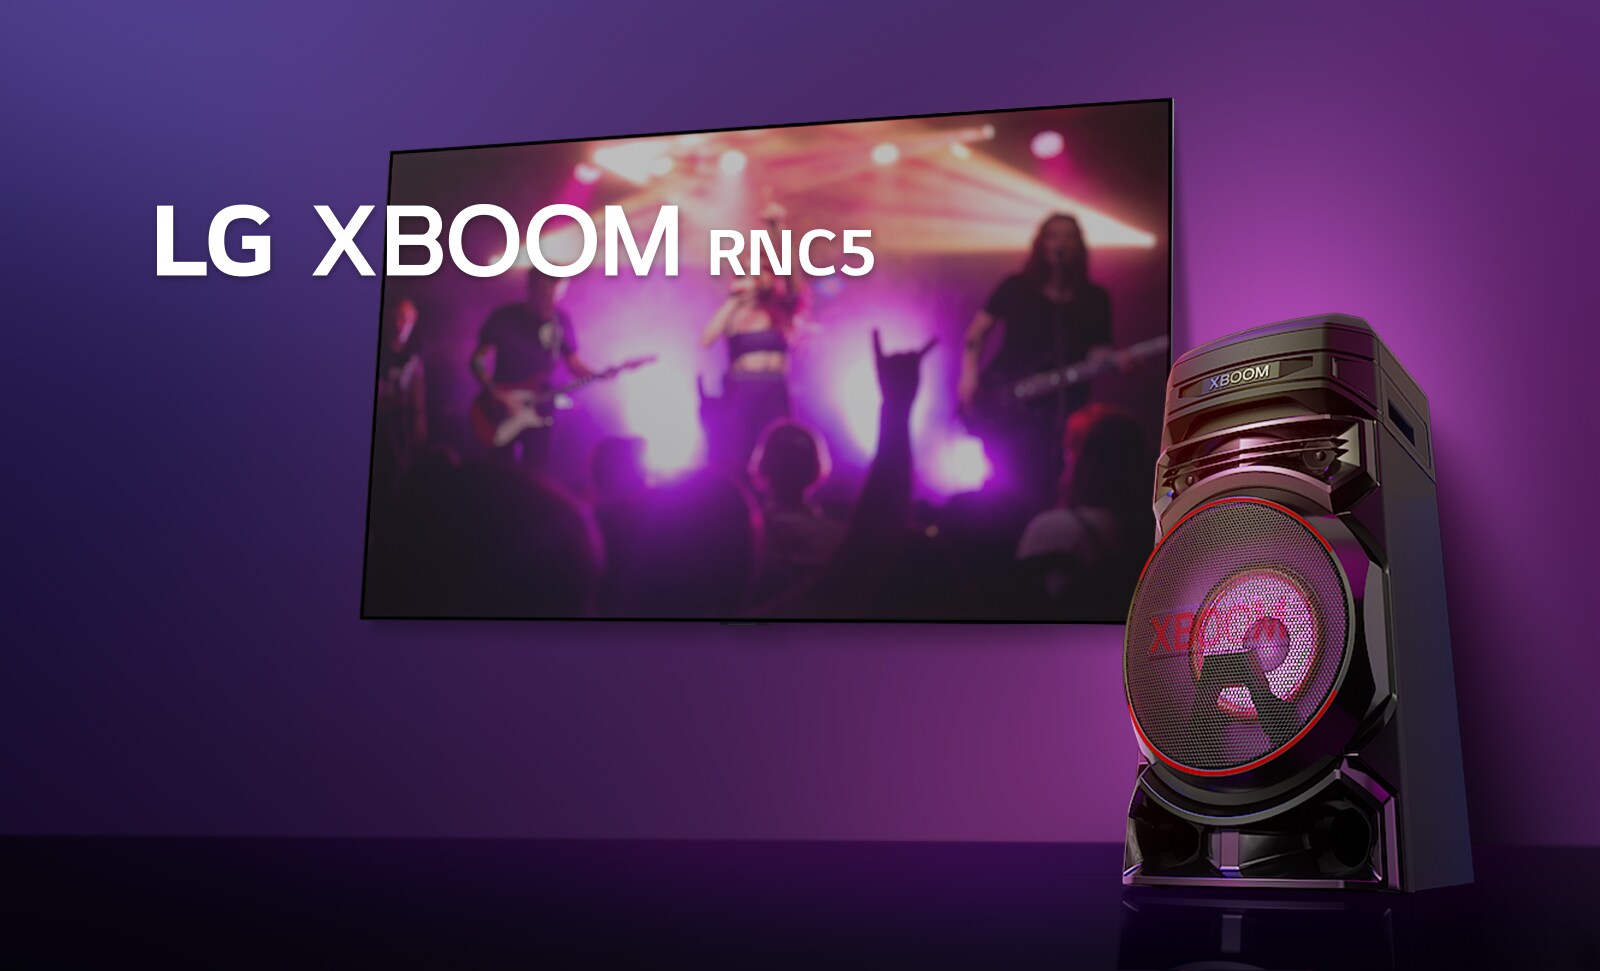 Prikaz desne strane sustava LG XBOOM RNC5 iz niskog kuta na ljubičastoj pozadini.  Svjetla u sustavu XBOOM također su ljubičasta. Na TV zaslonu prikazuje se koncertna scena.